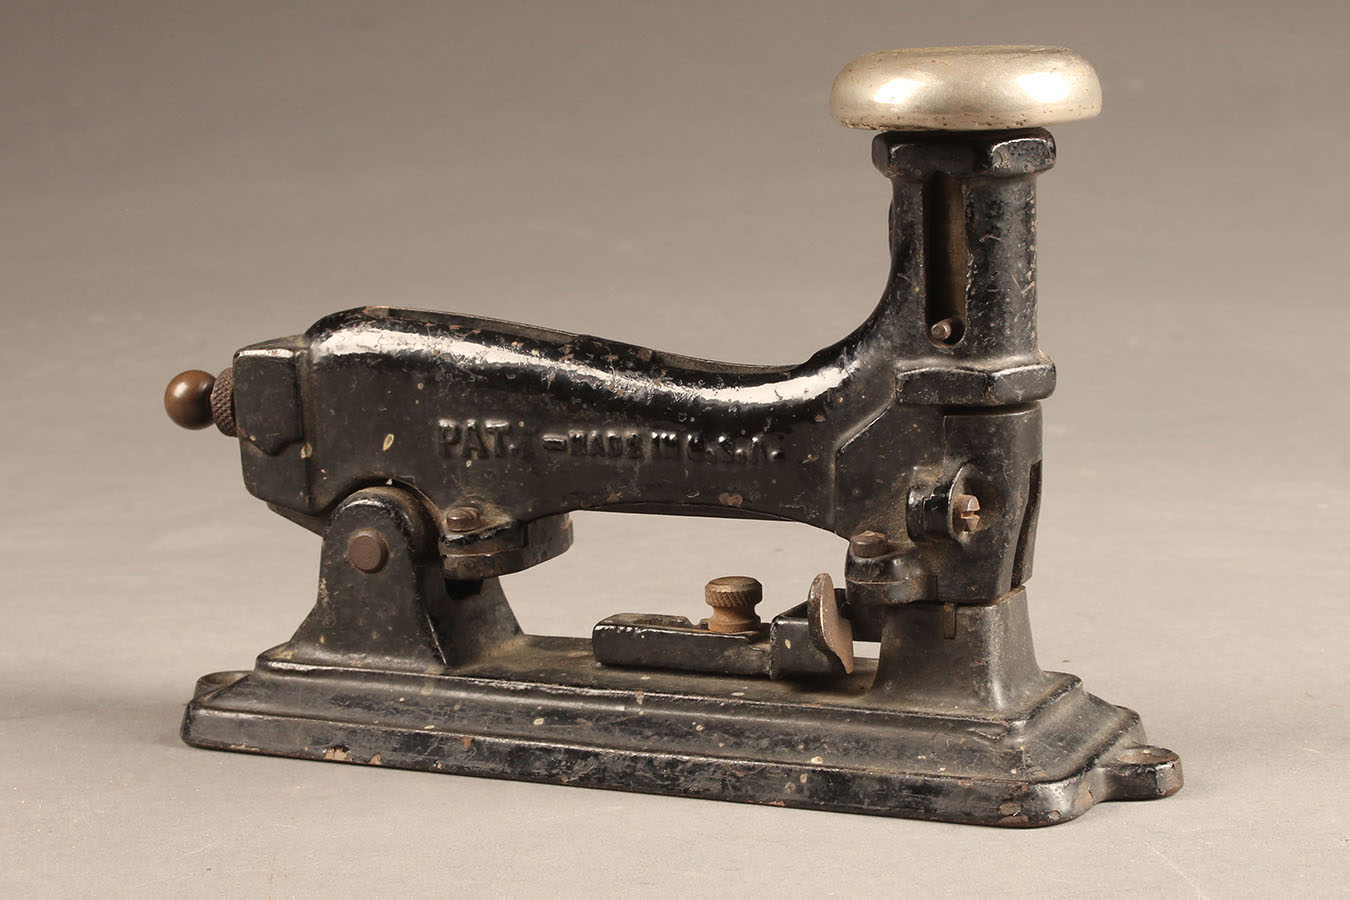 antique stapler